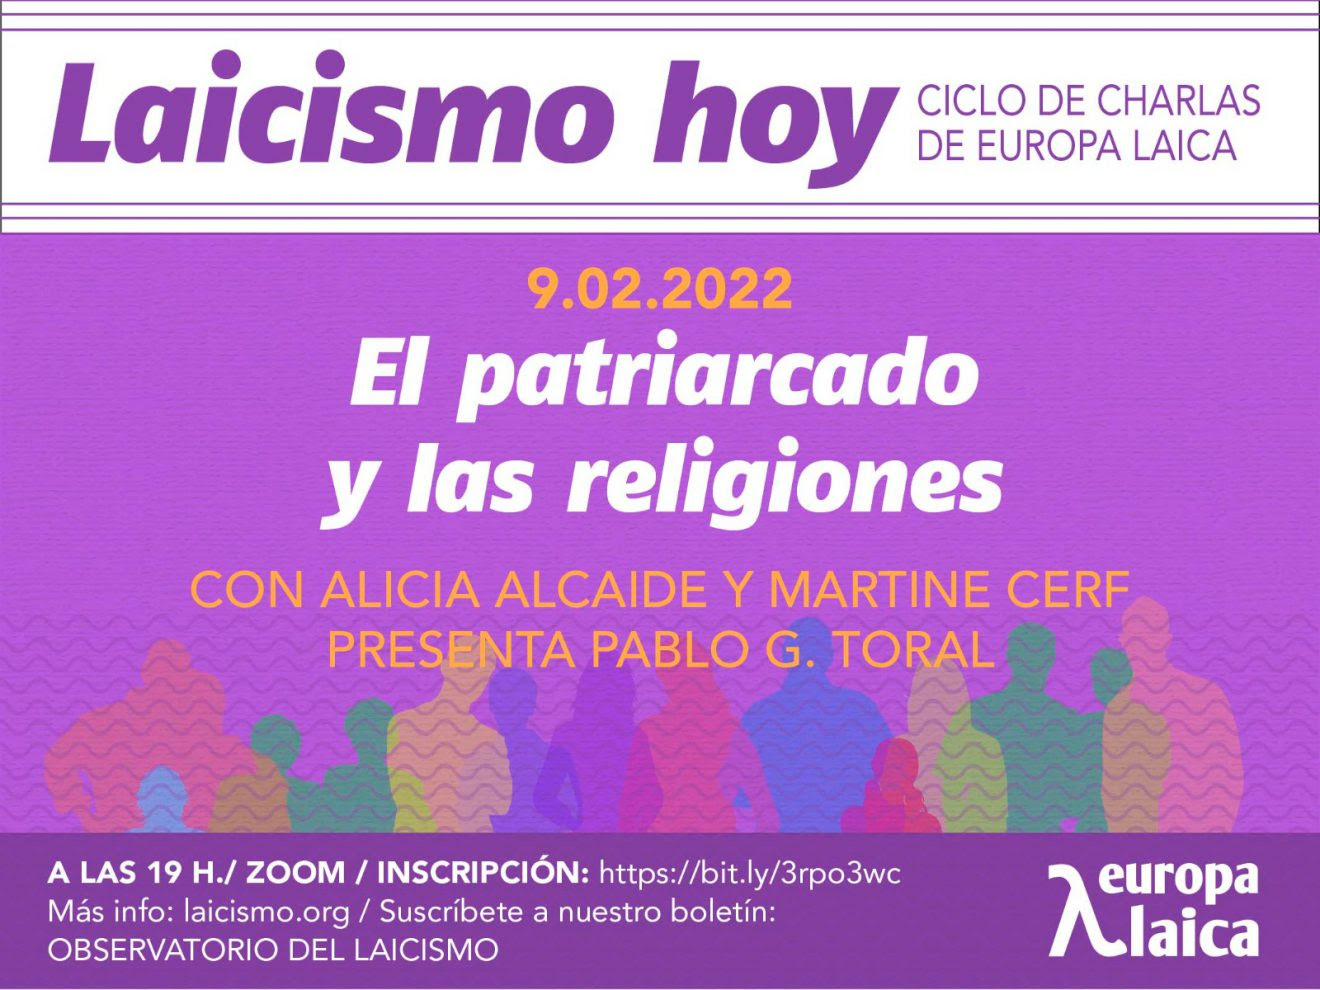 El miércoles 9 de febrero, dentro del ciclo de charlas de Europa Laica, ＂El patriarcado y las religiones＂ a cargo de Alicia Alcaide y Martine Cerf